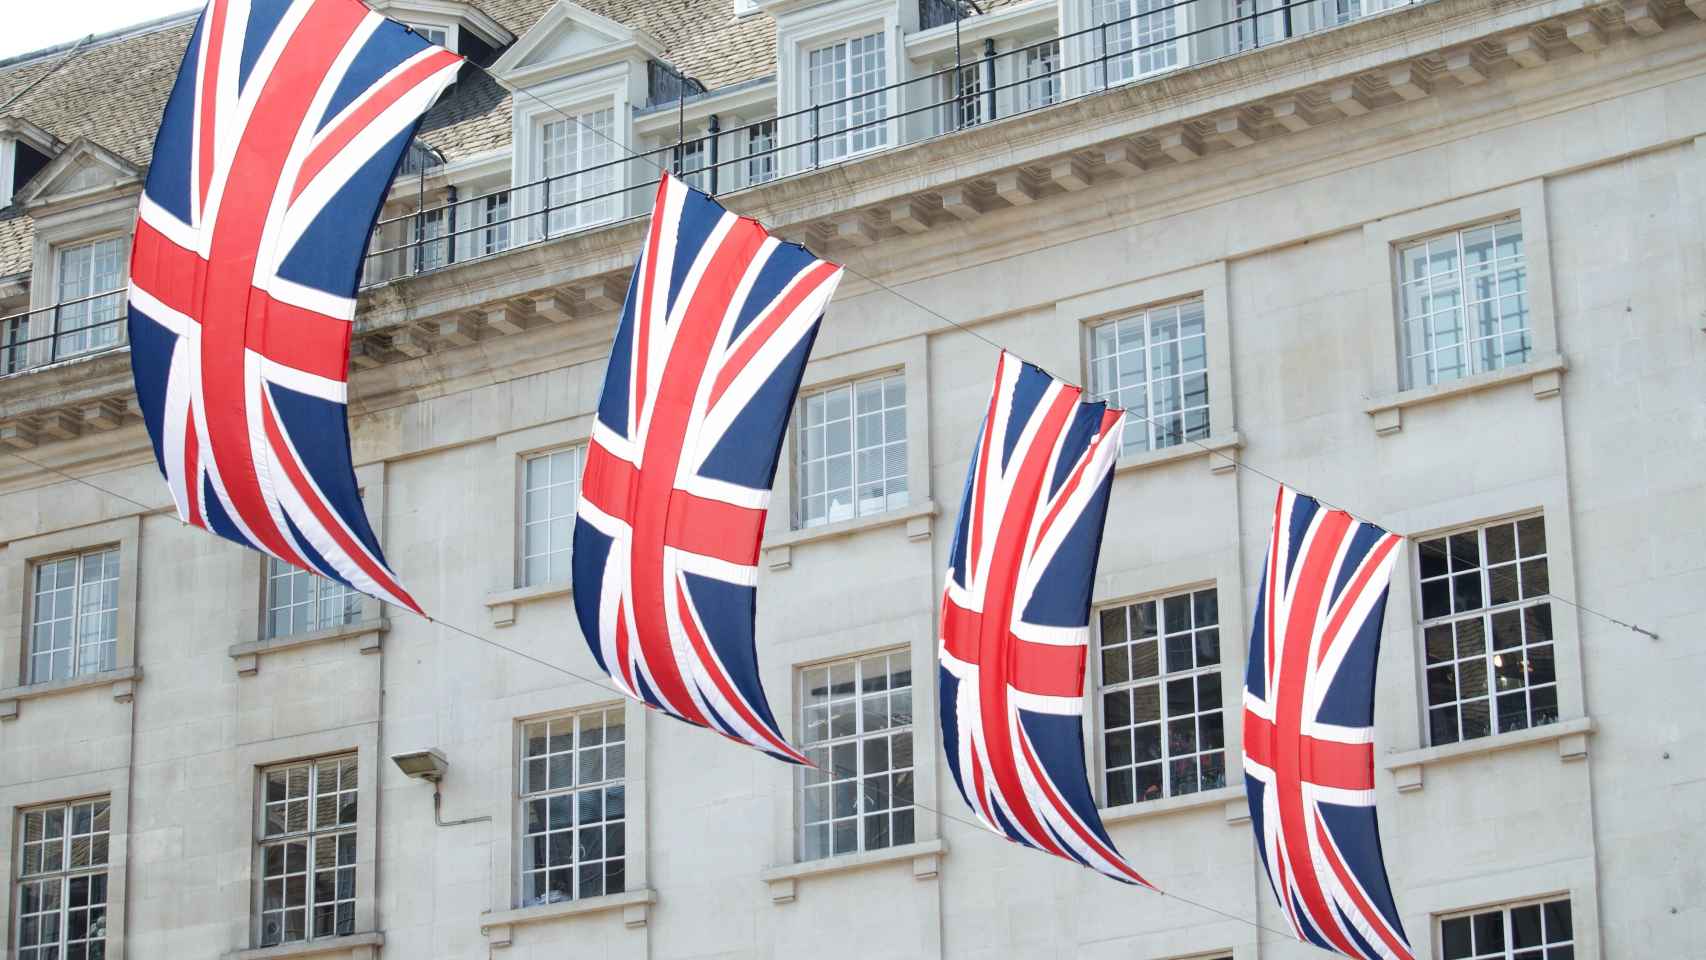 Banderas británicas en Londres.